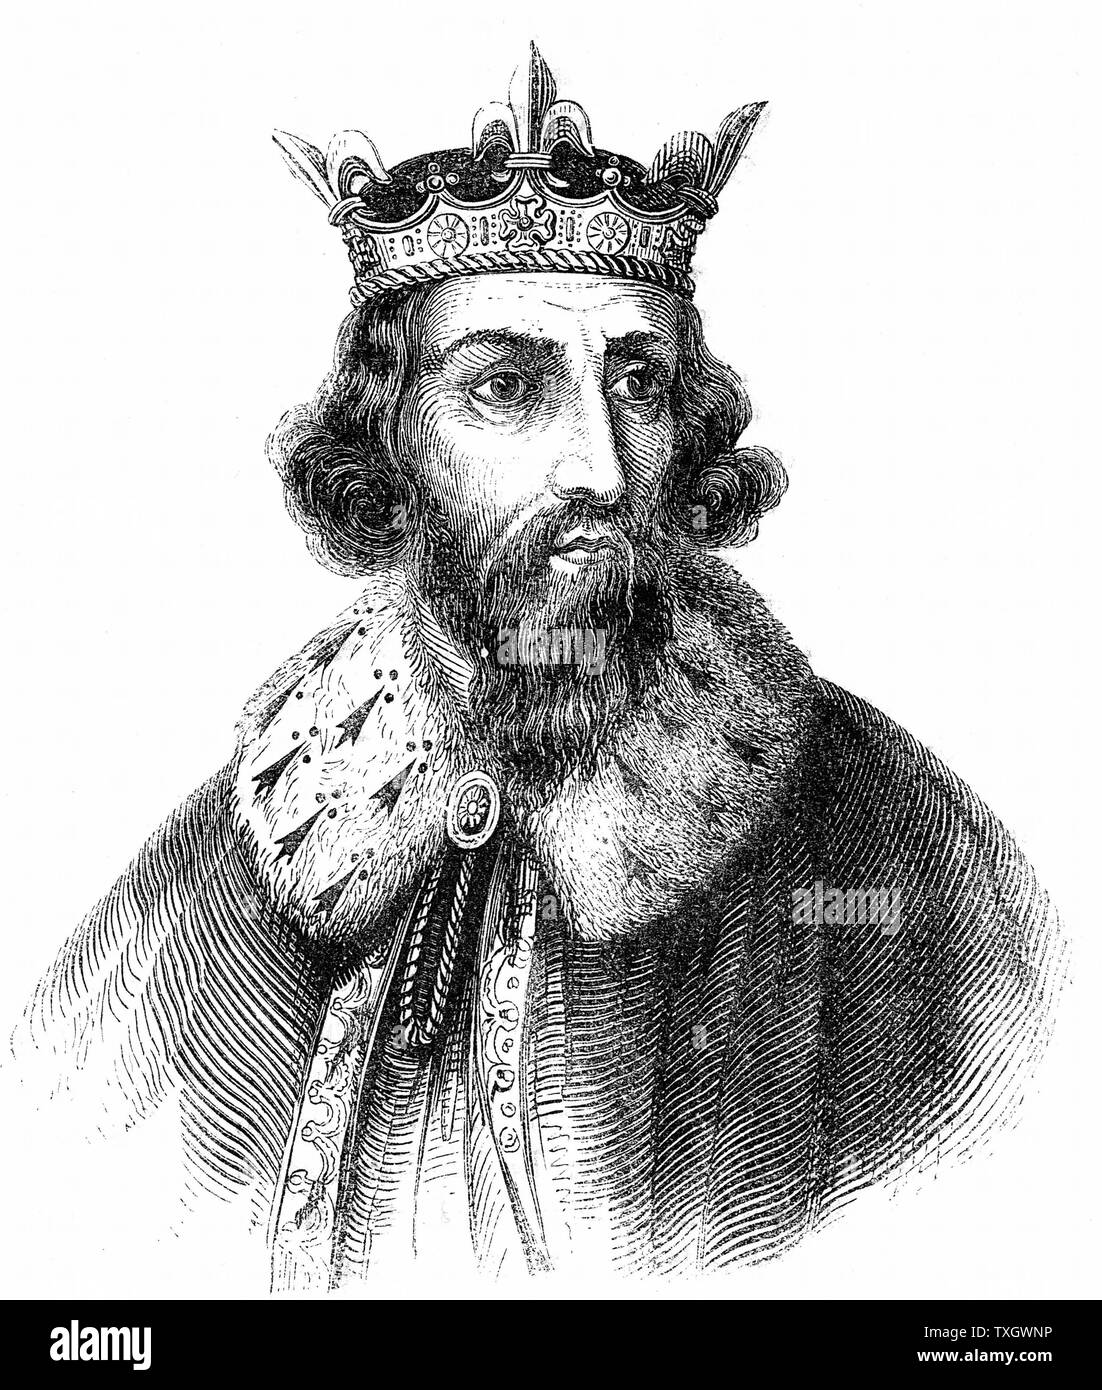 Alfredo il Grande (849-899) re anglosassone del Wessex da 871. Sconfitti i danesi a Edington, Wiltshire. Firma del trattato di partizione e formalizzazione del Danelaw 886. Incisione c.1850 Foto Stock